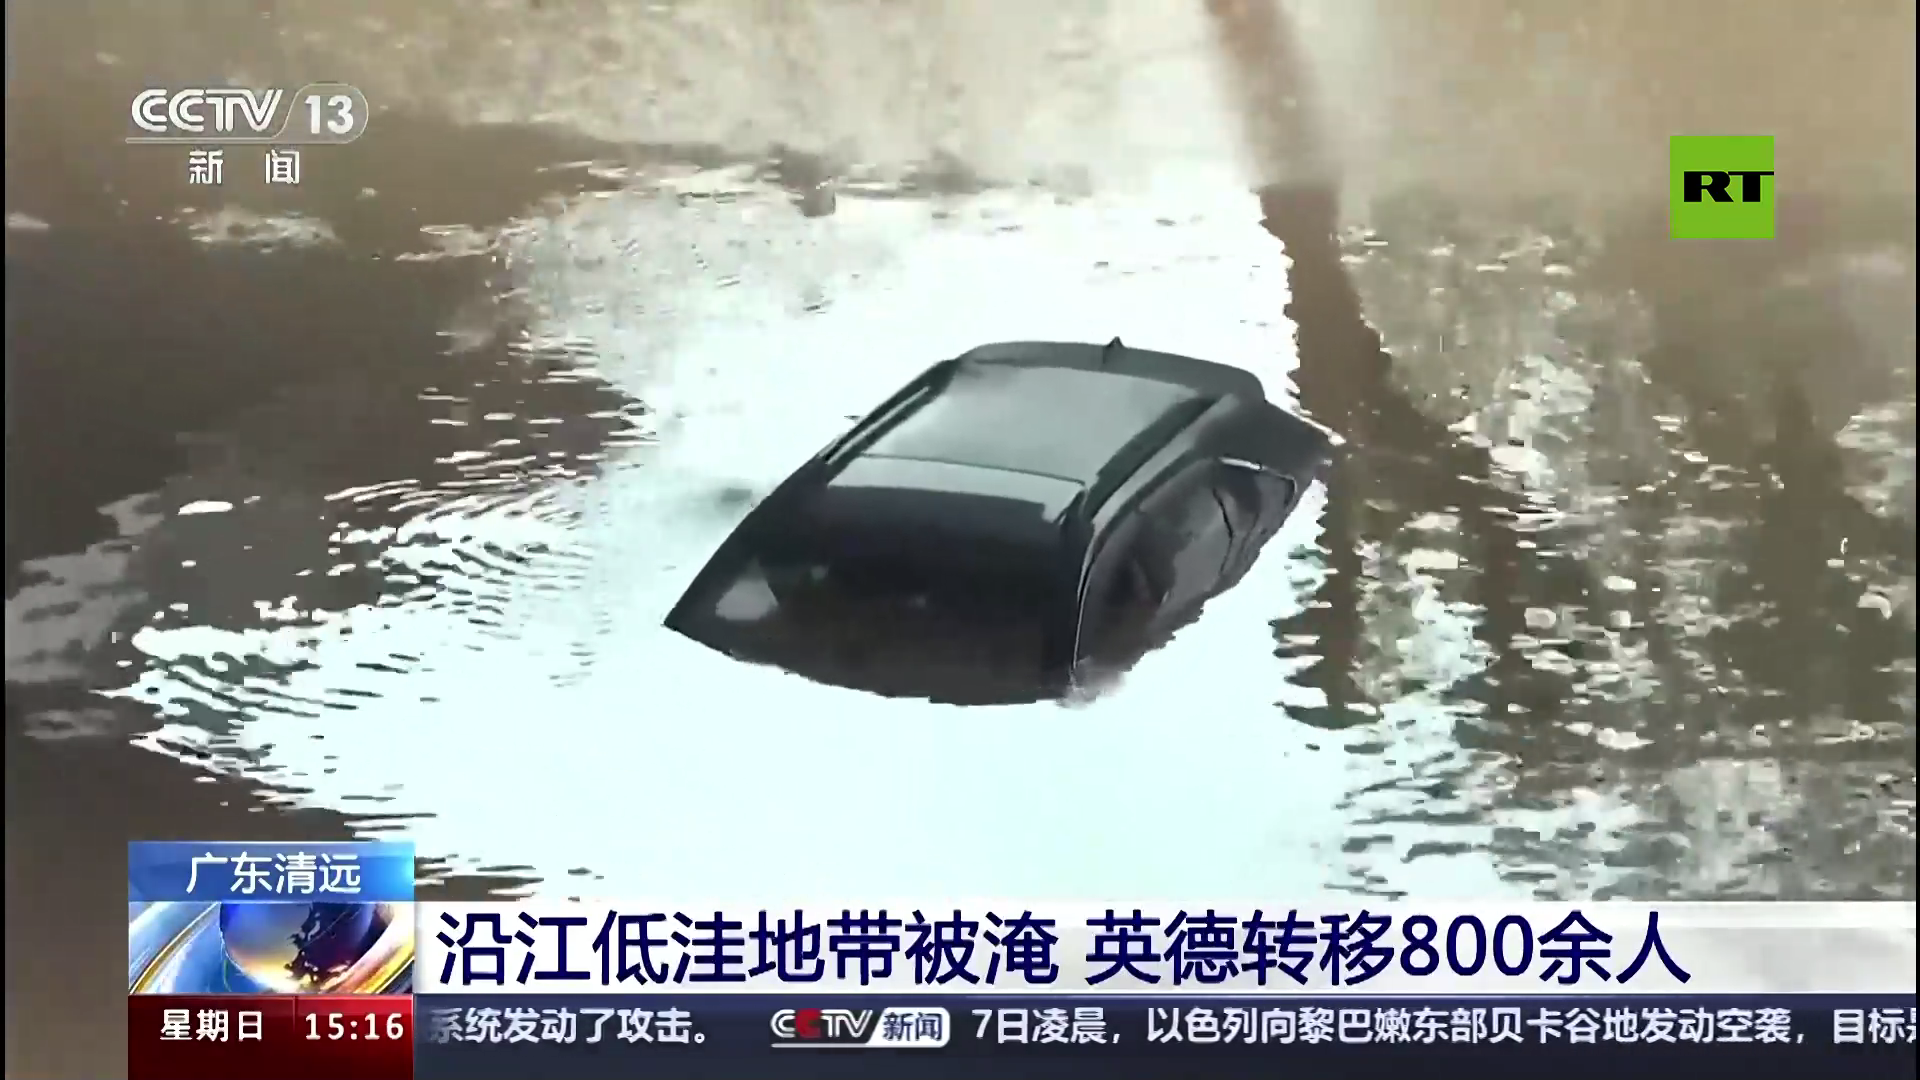 بالفيديو.. أمطار غزيرة وفيضانات تغمر مناطق بمقاطعة غوانغدونغ الصينية